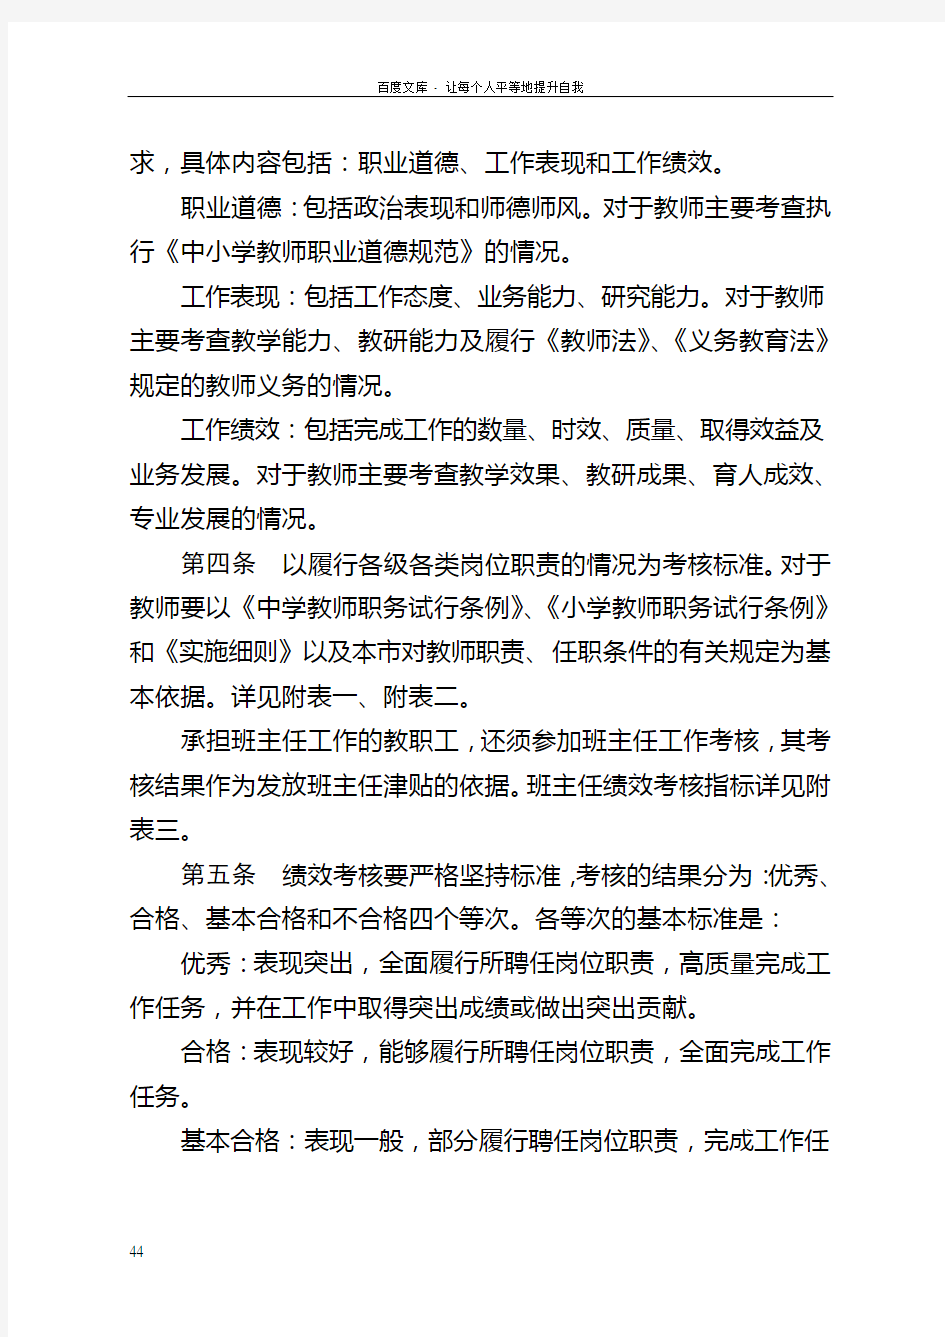 北京市义务教育学校教职工绩效考核试行办法